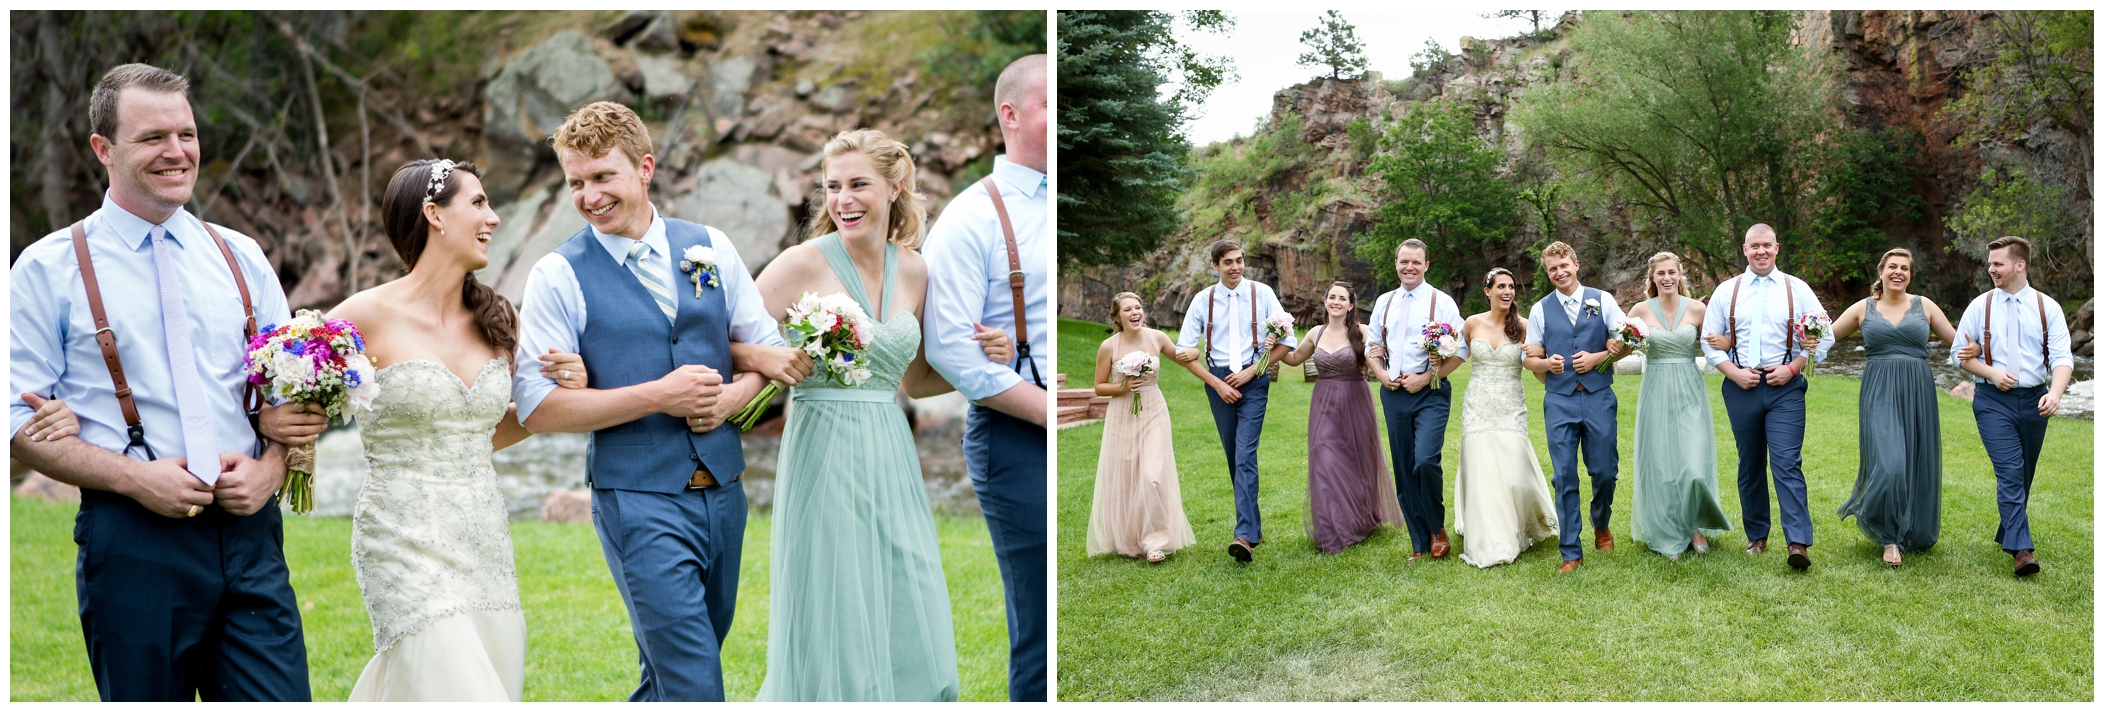 wedding party in Colorado mountains 